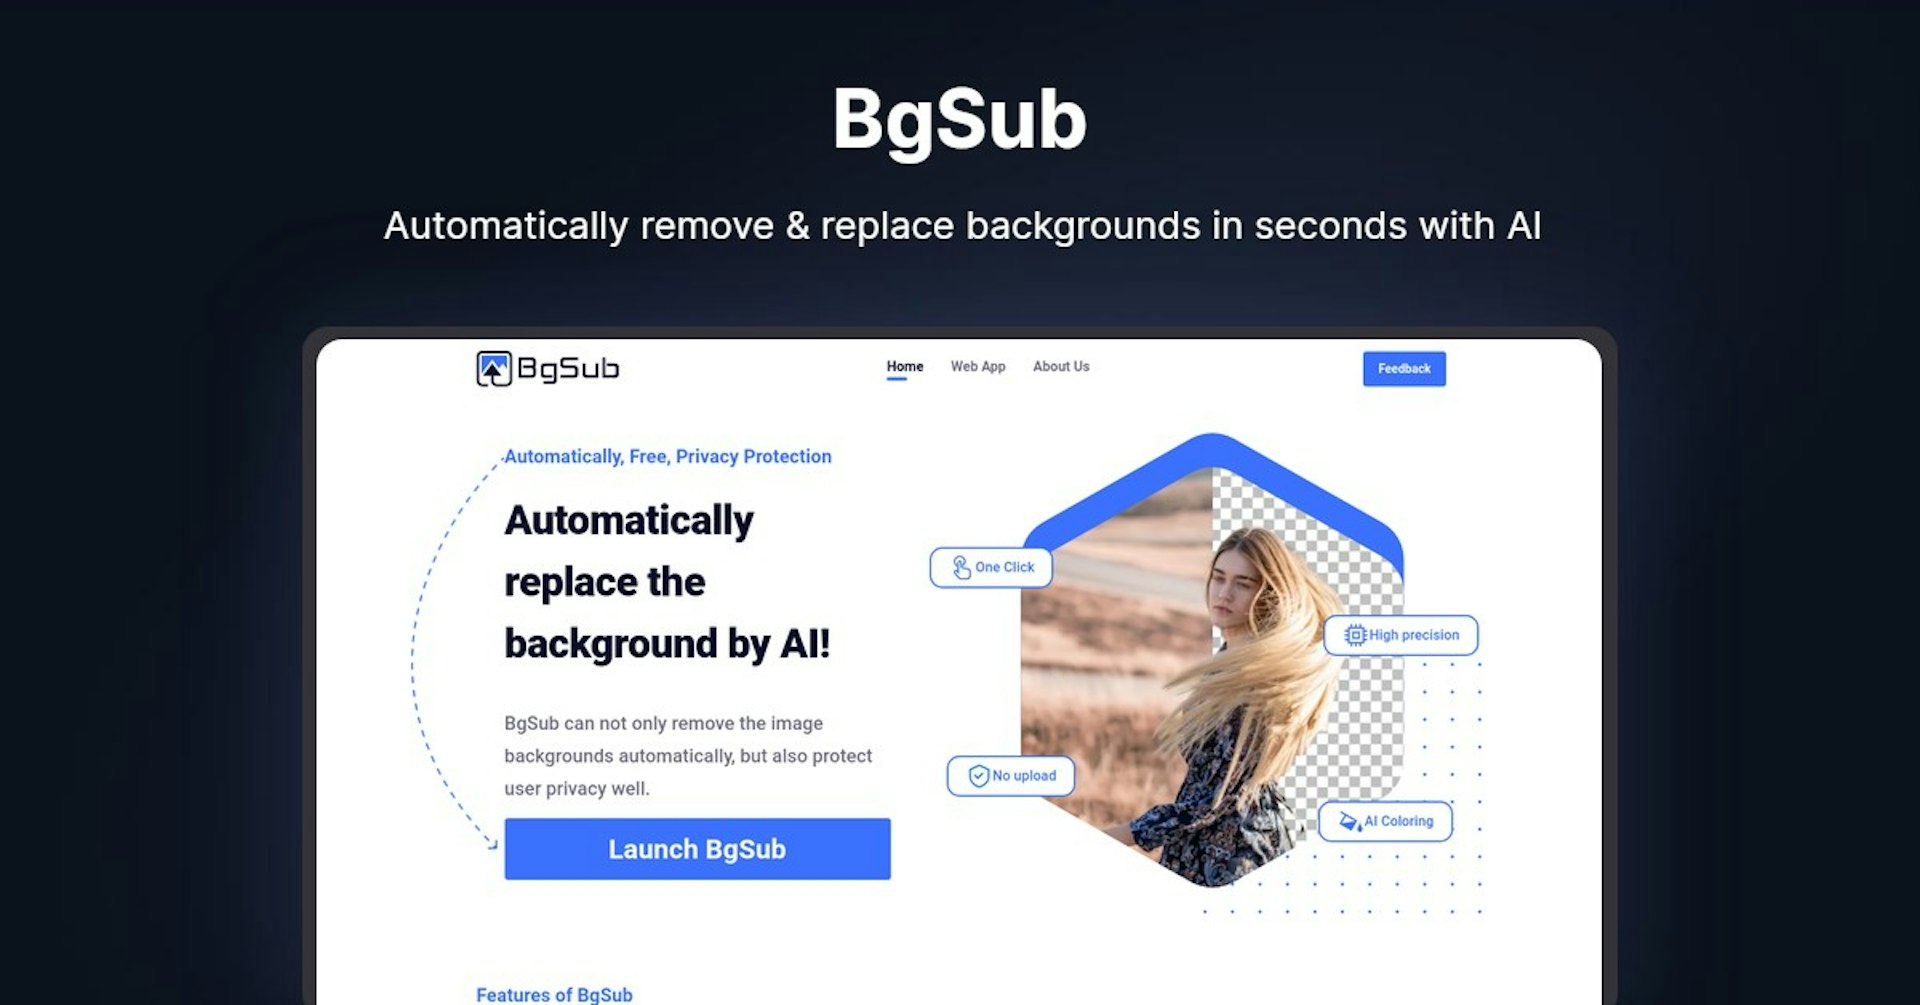 BgSub